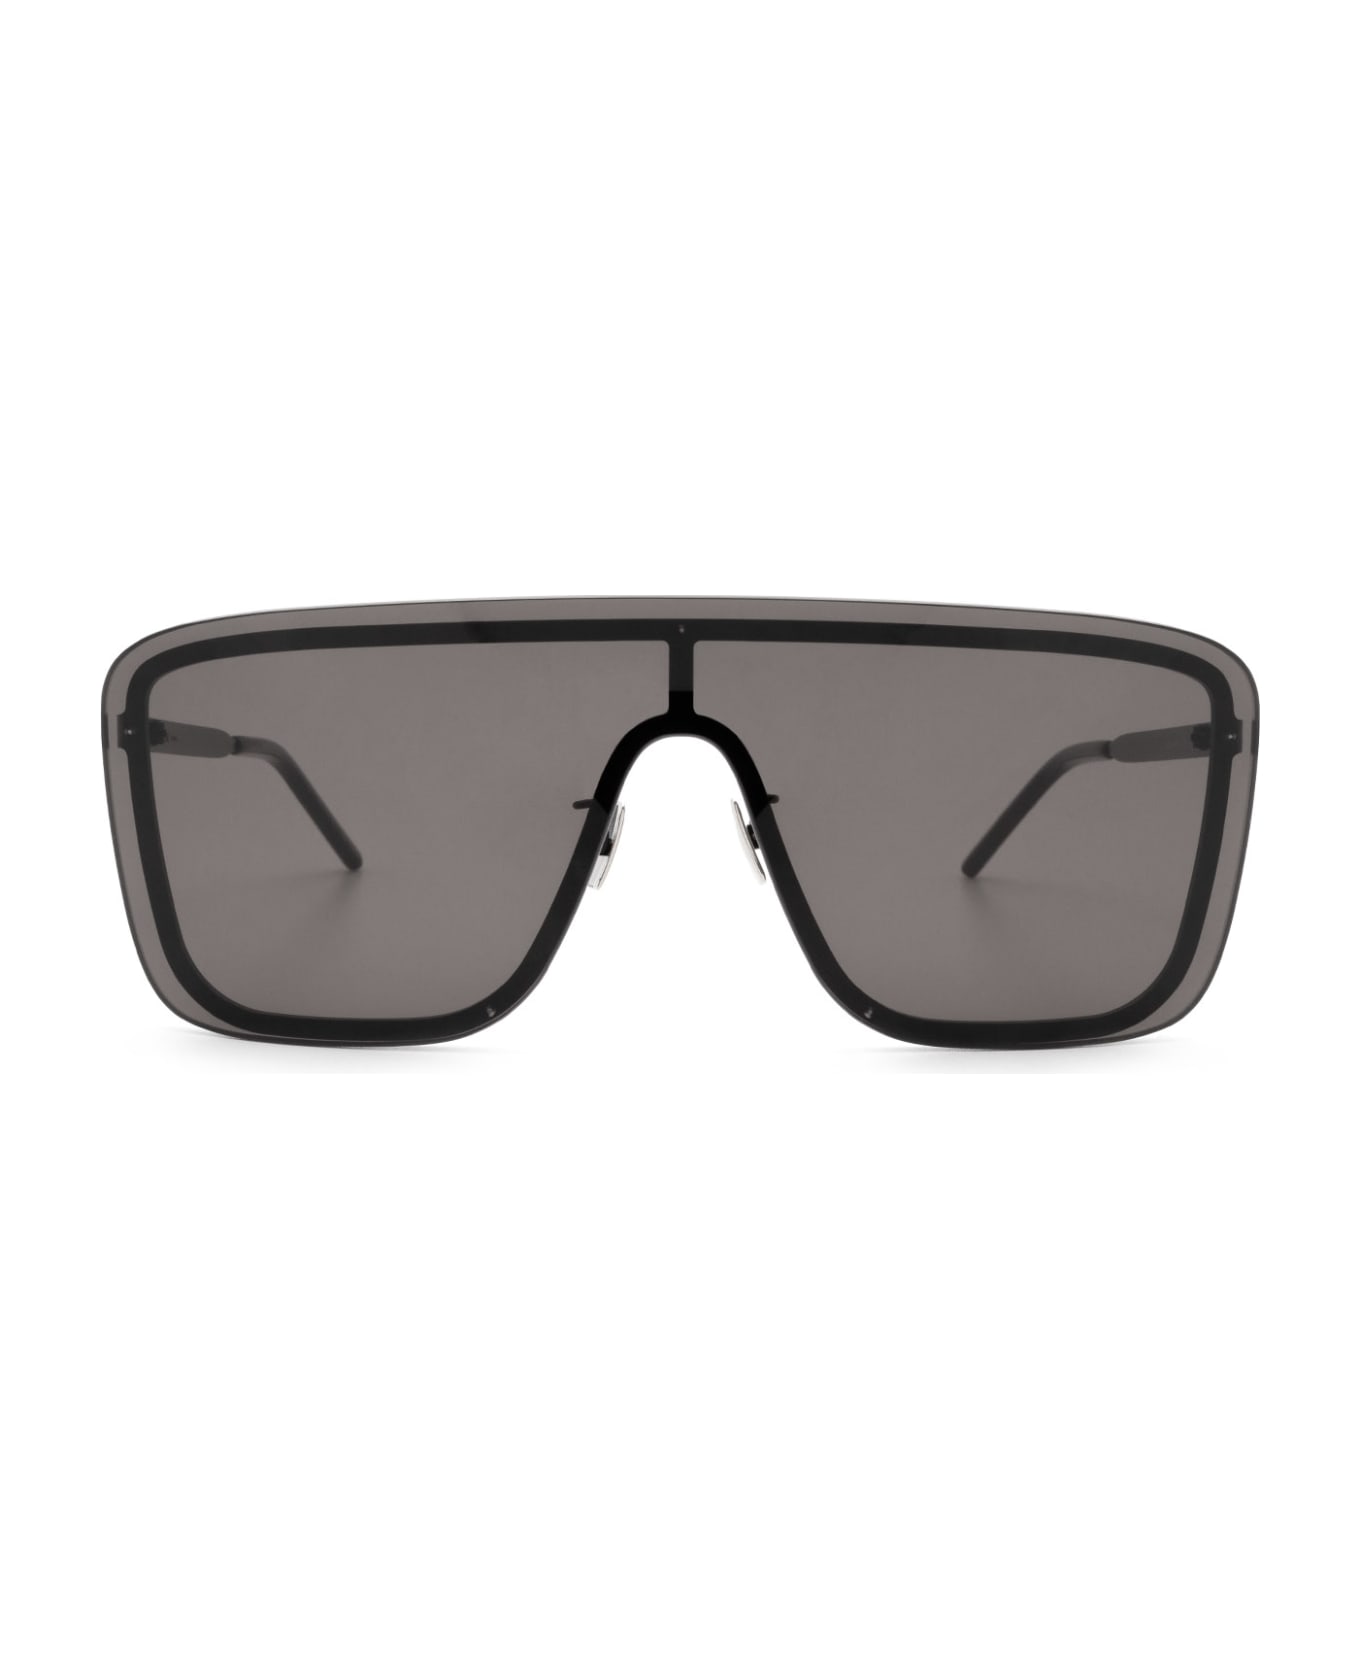 Saint Laurent Eyewear Sl 364 Mask Black Sunglasses - Black